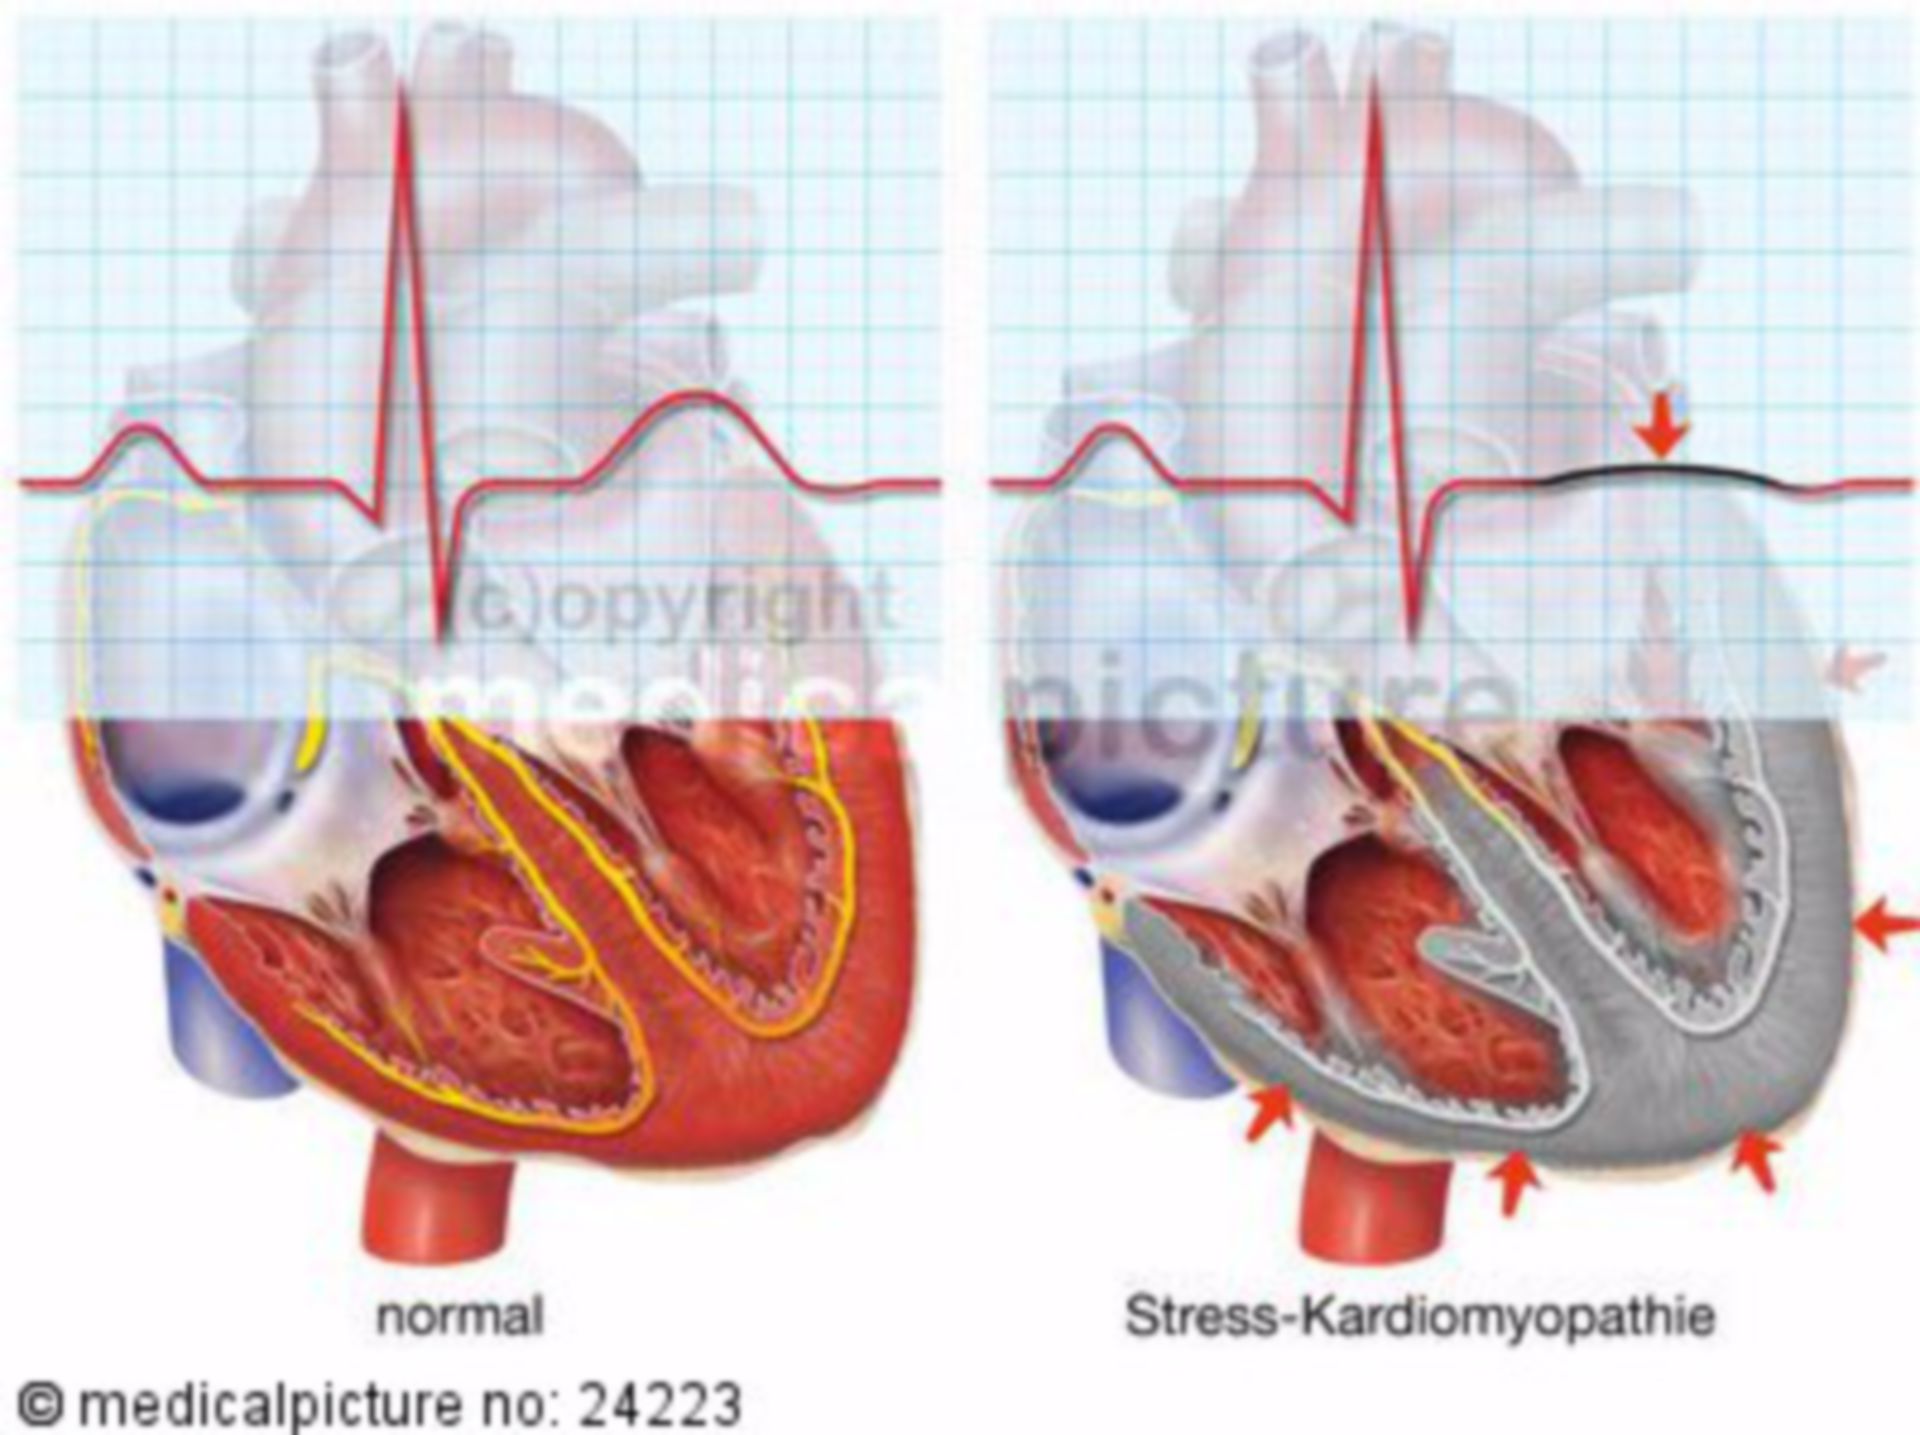 Stress-Kardiomyopathie